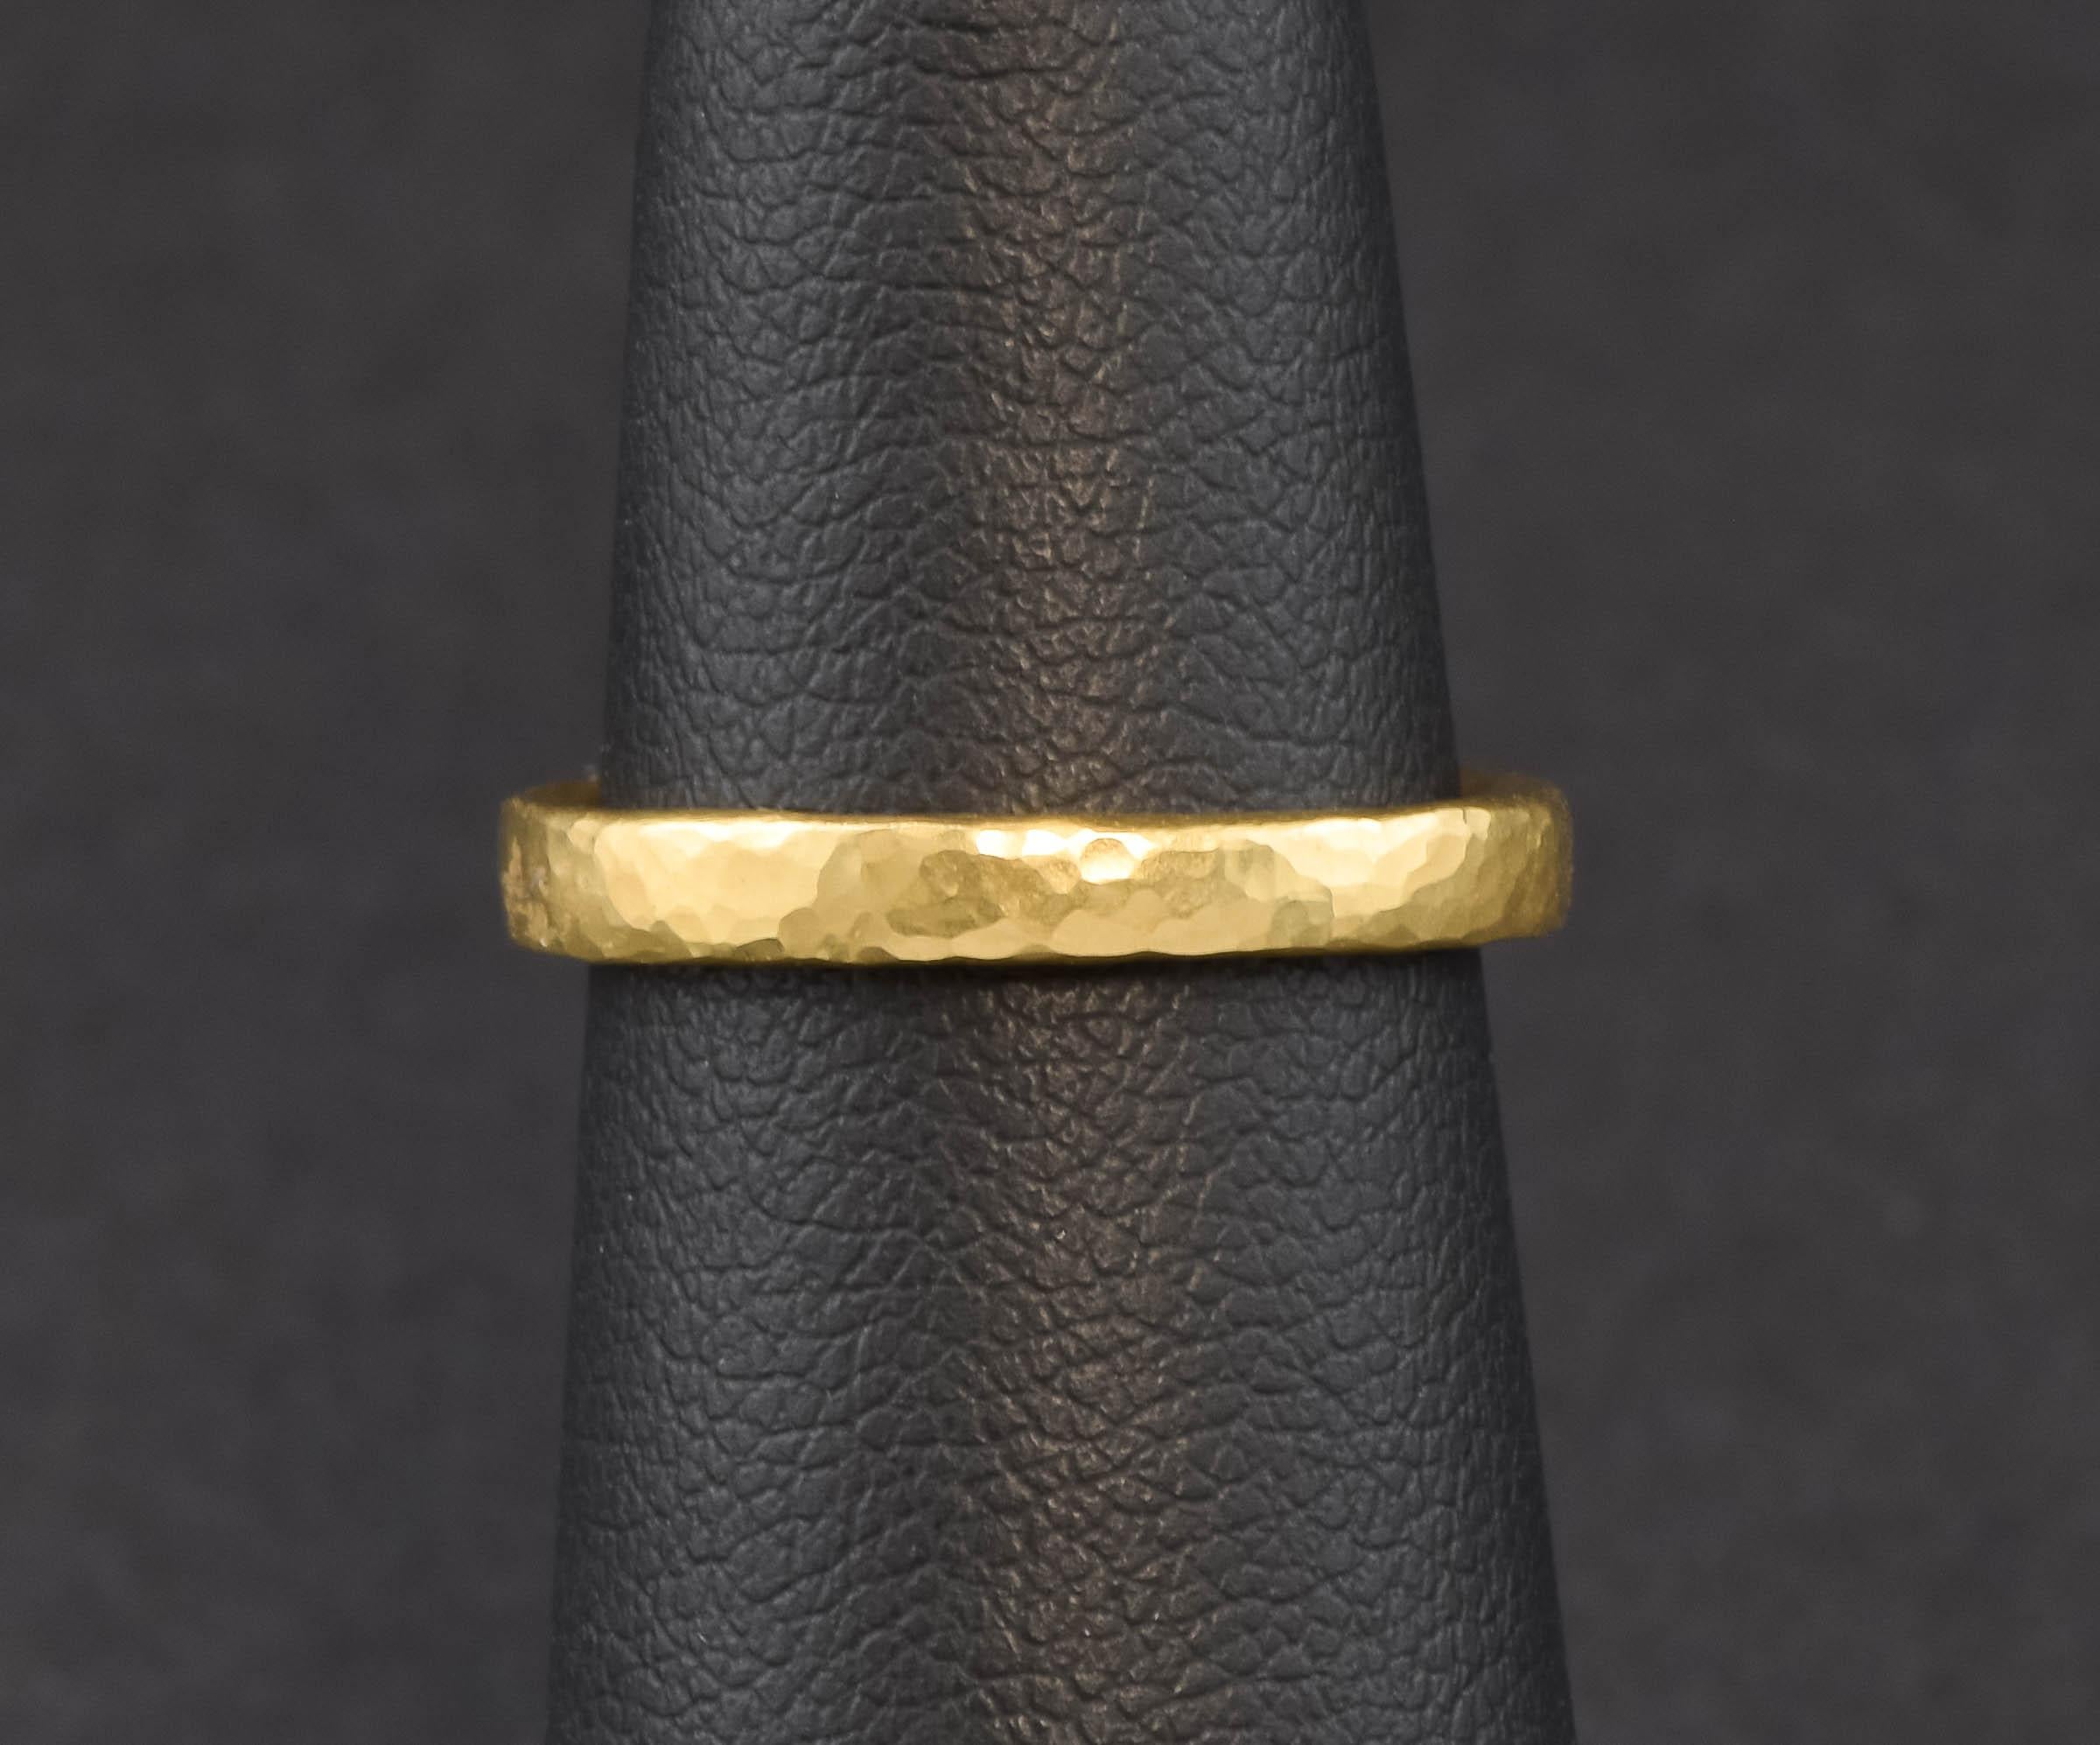 Ich freue mich, ein weiteres luxuriöses Band aus 22-karätigem Gold anbieten zu können - dieses hier hat eine wunderbare handgehämmerte Oberfläche, die das Licht so schön einfängt.

Das aus massivem 22-karätigem Gold gefertigte Band (innen noch